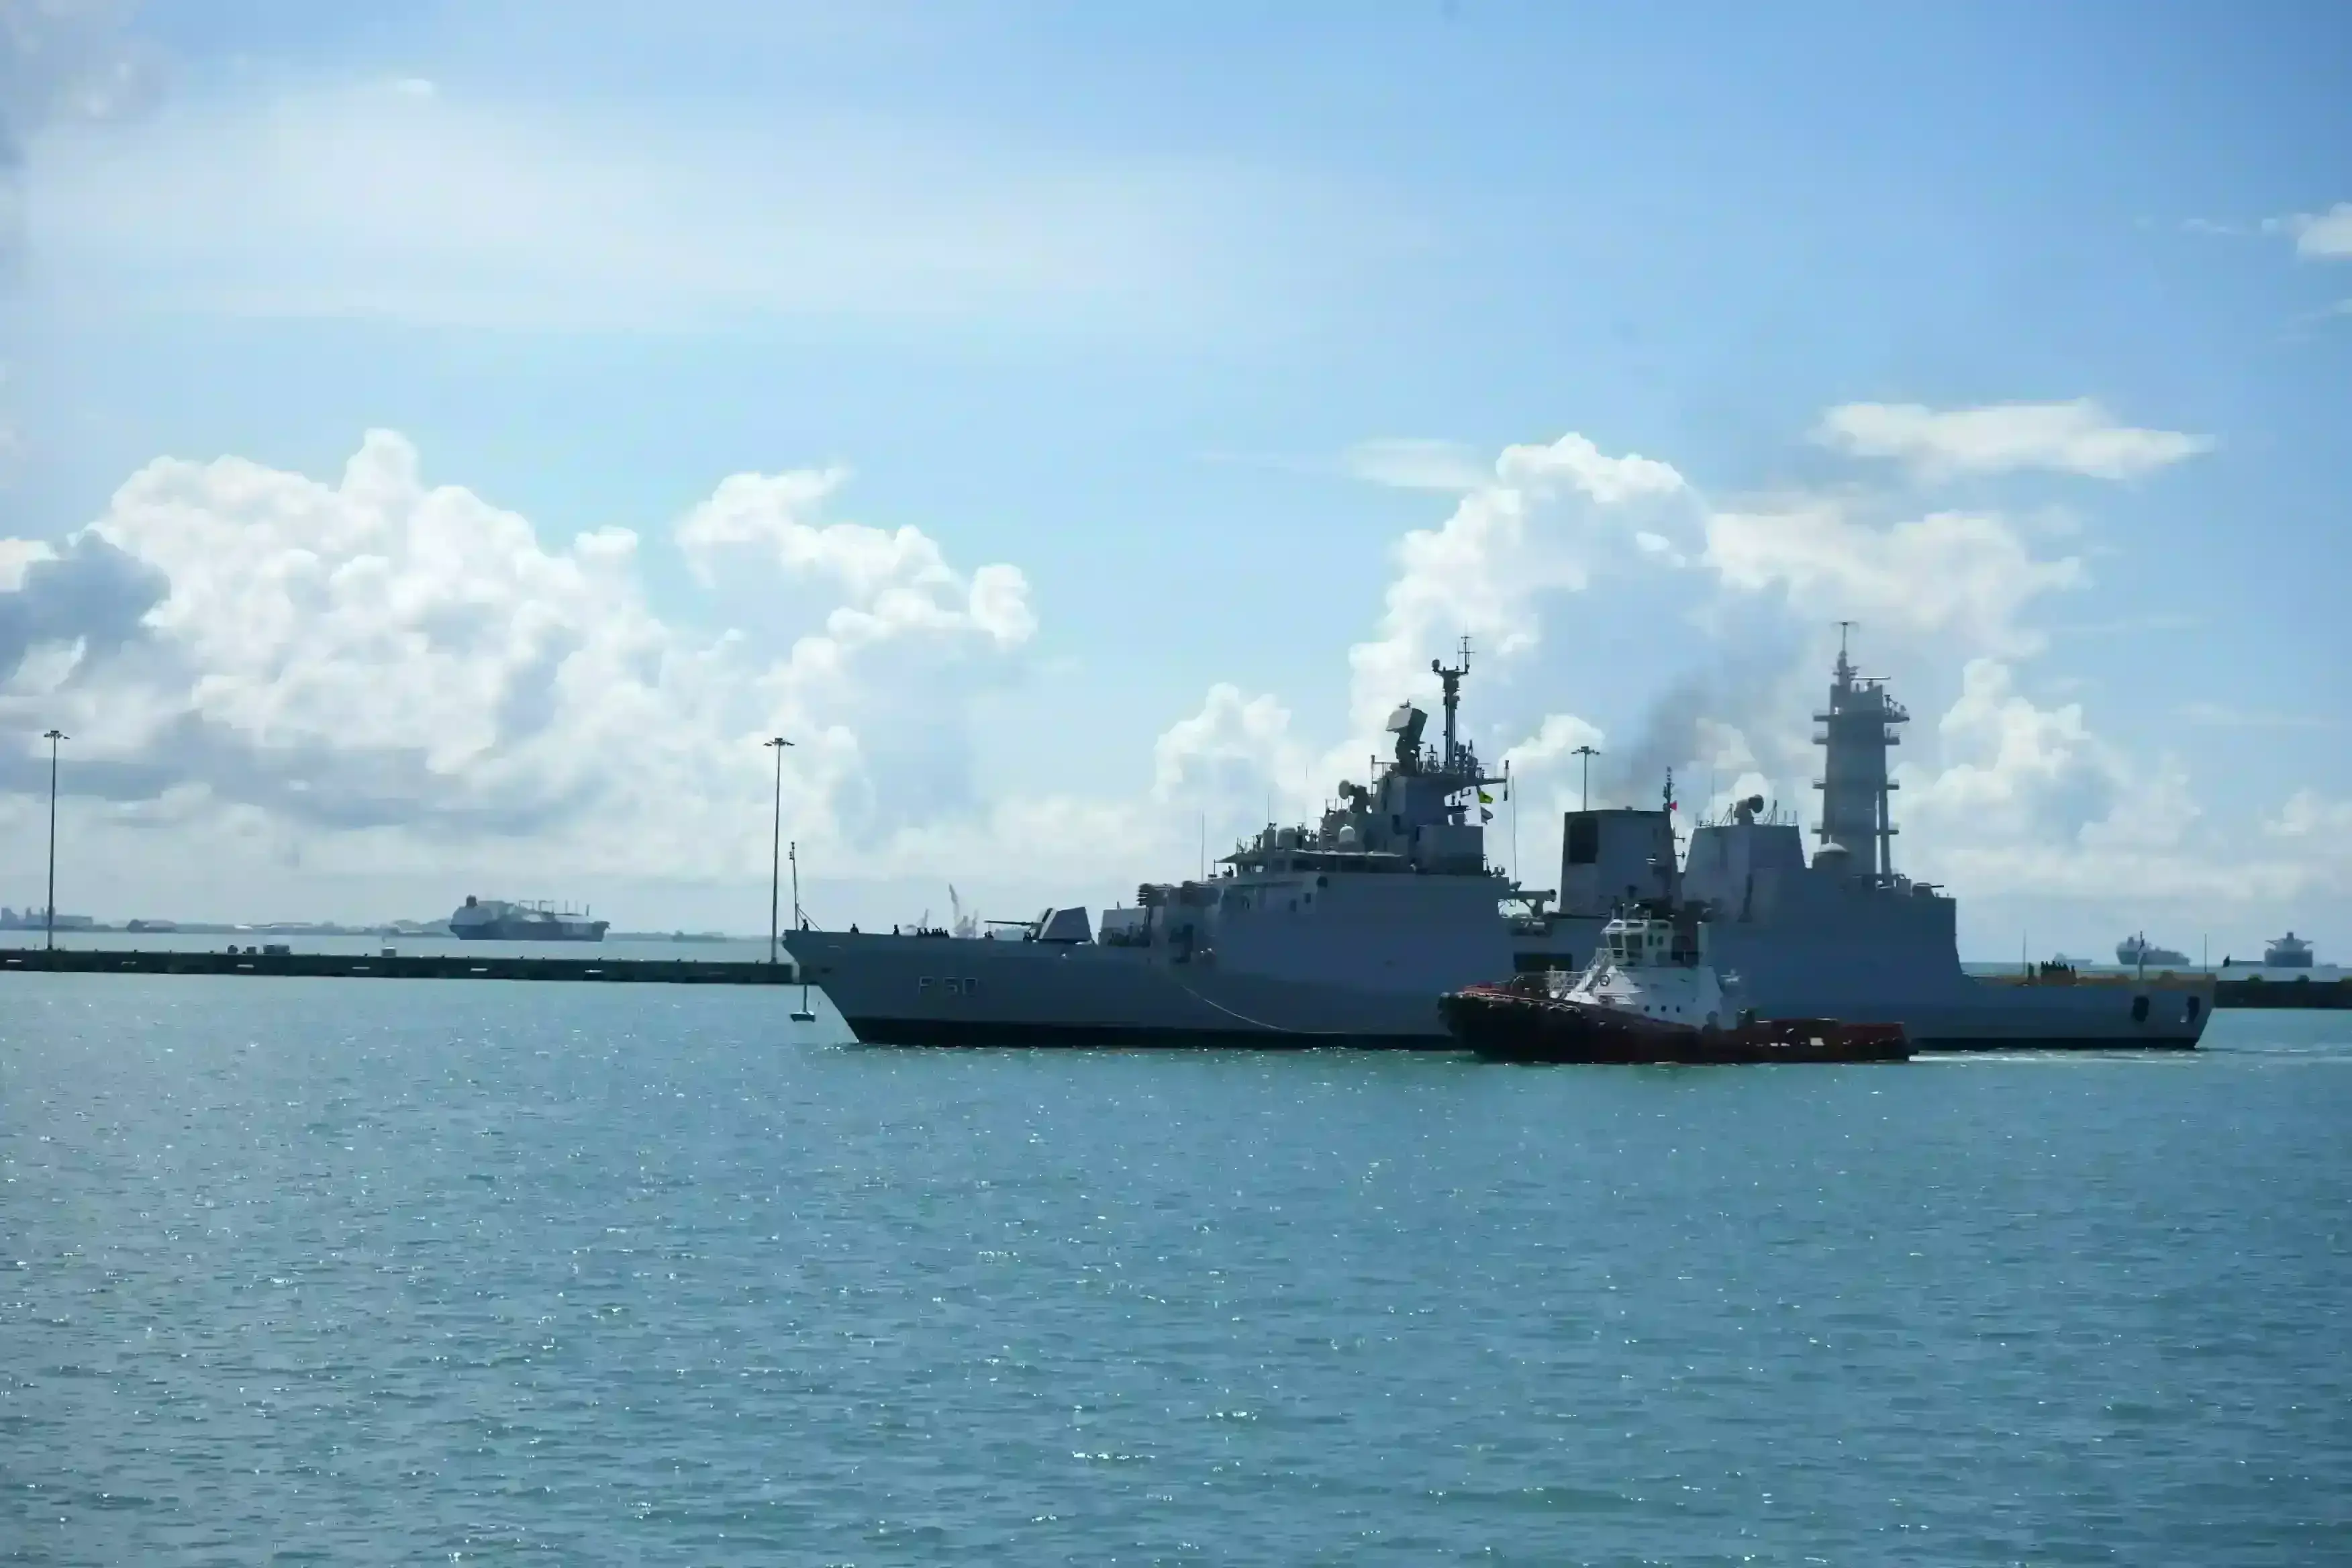 भारतीय नौसेना के तीन जहाजों की दक्षिण चीन सागर में तैनाती, सिंगापुर पहुंचे